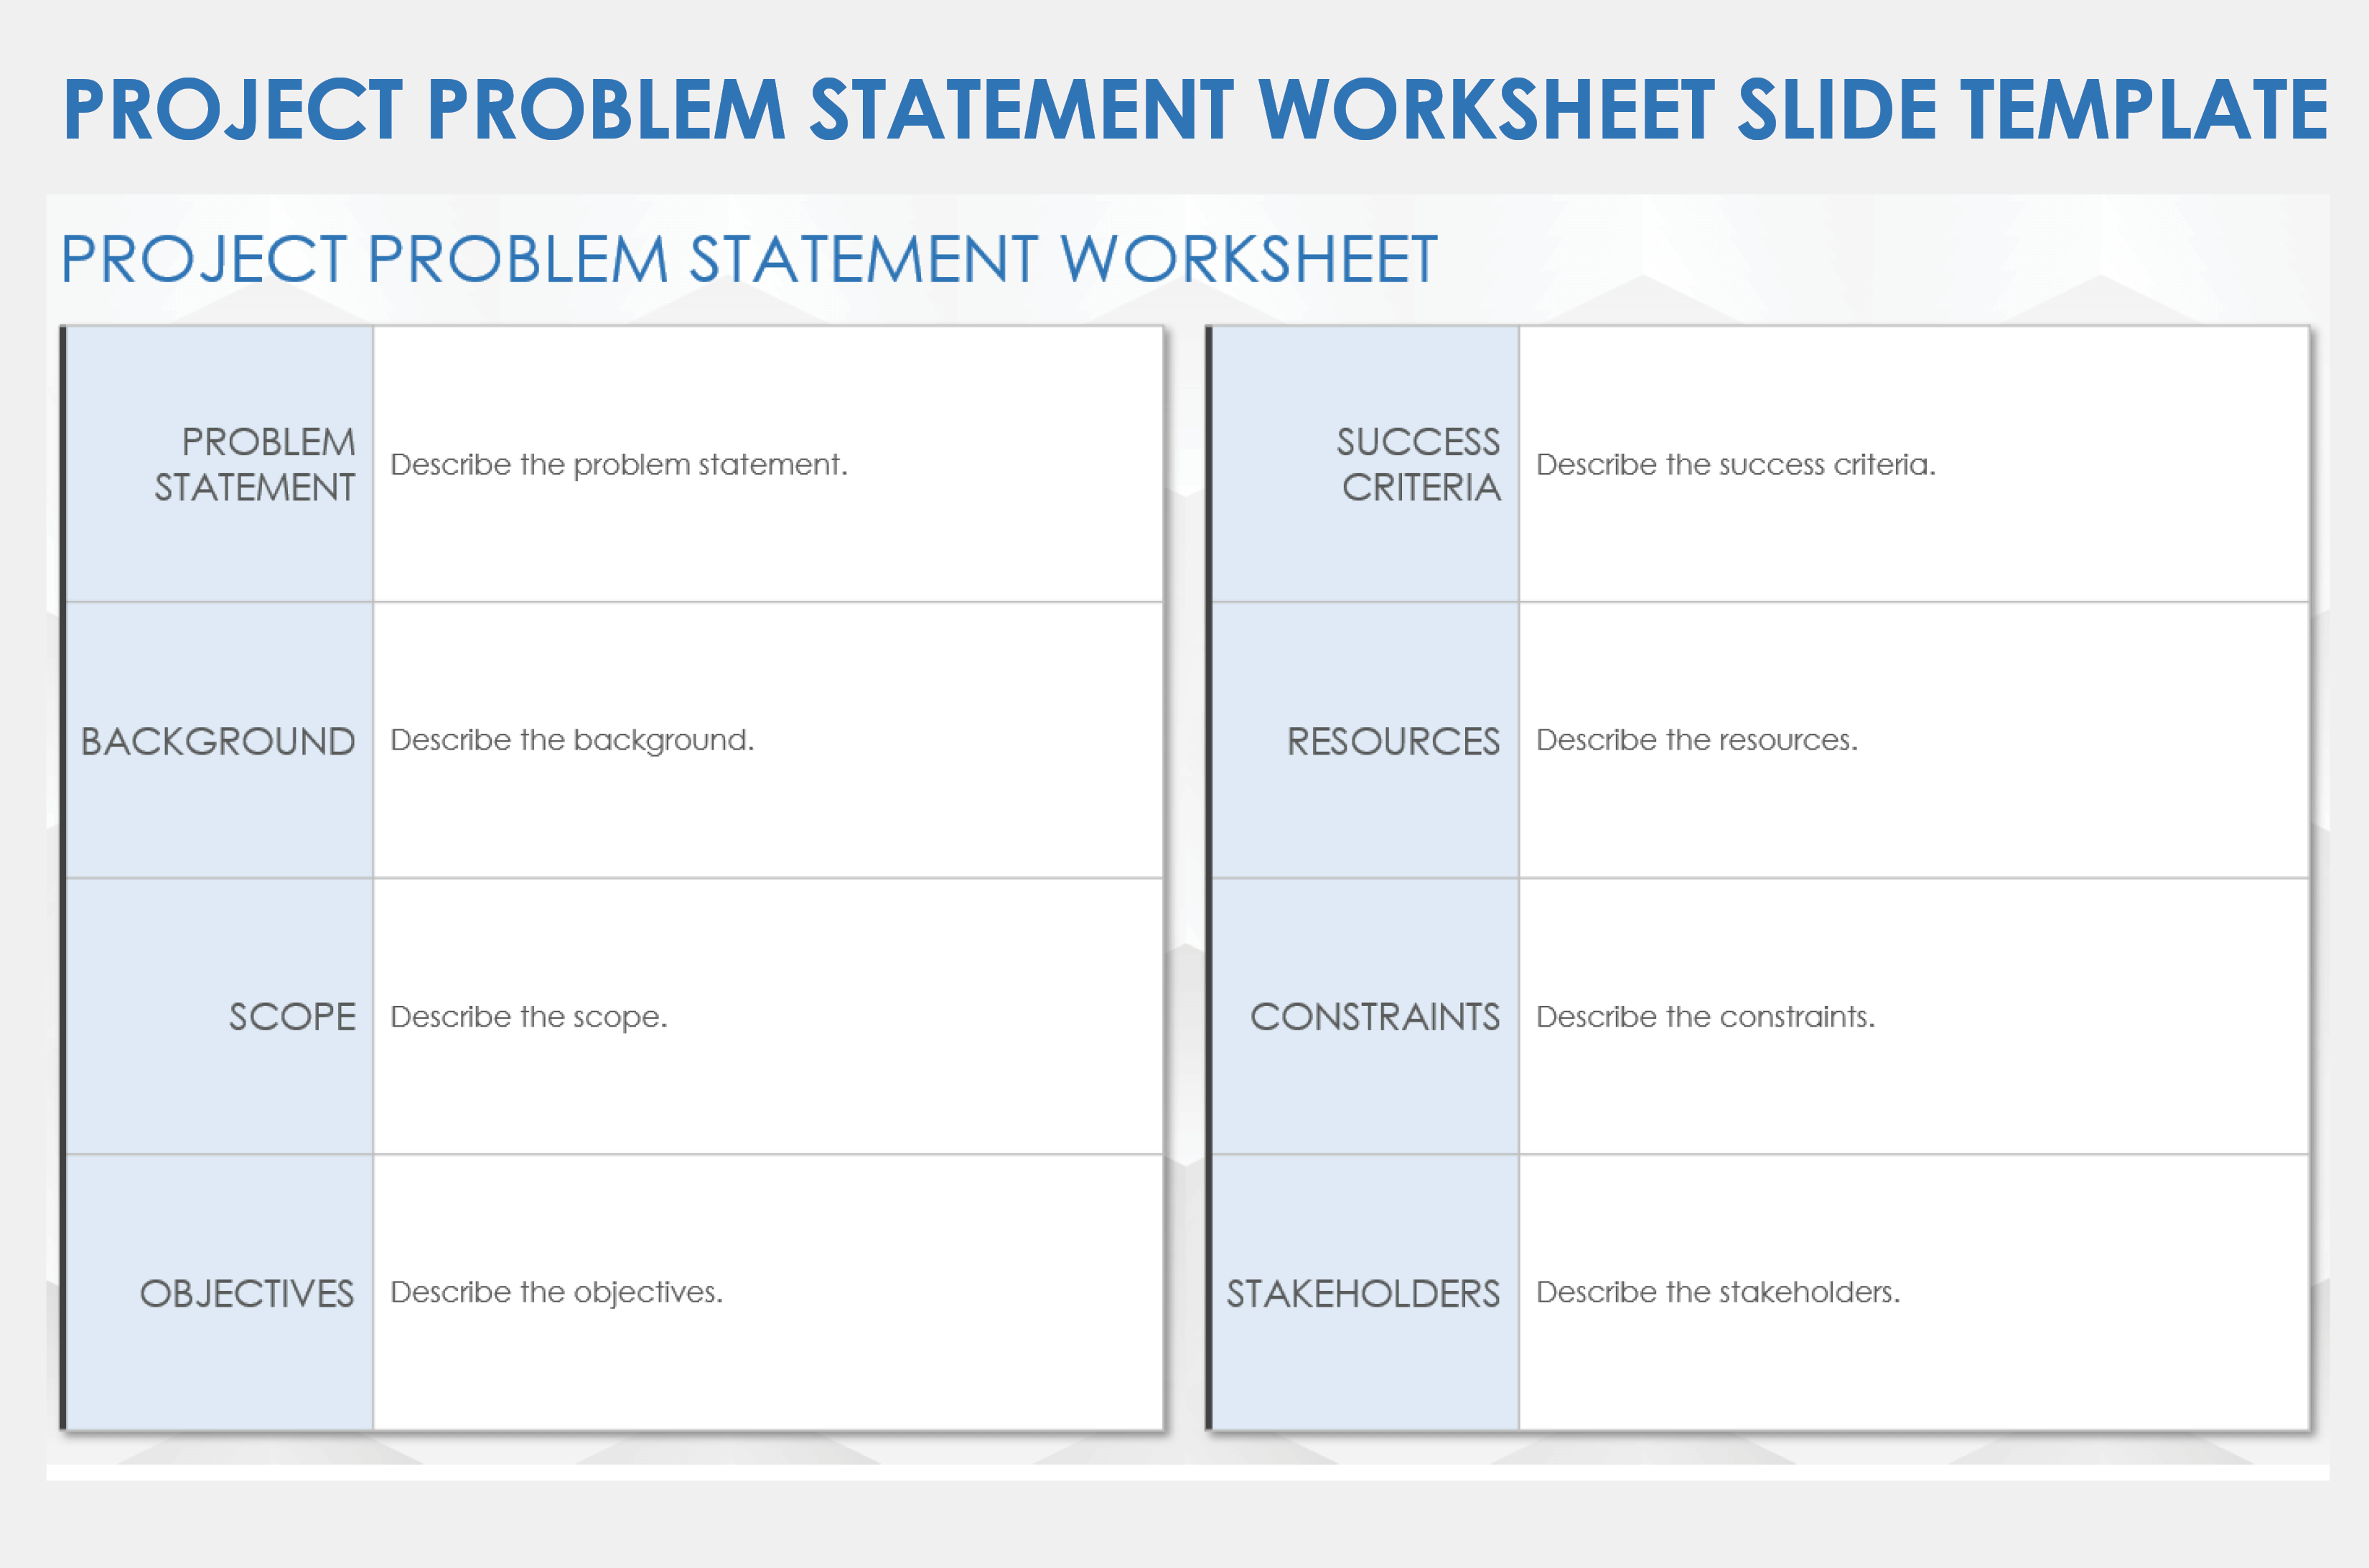 Project Problem Statement Worksheet Slide Template